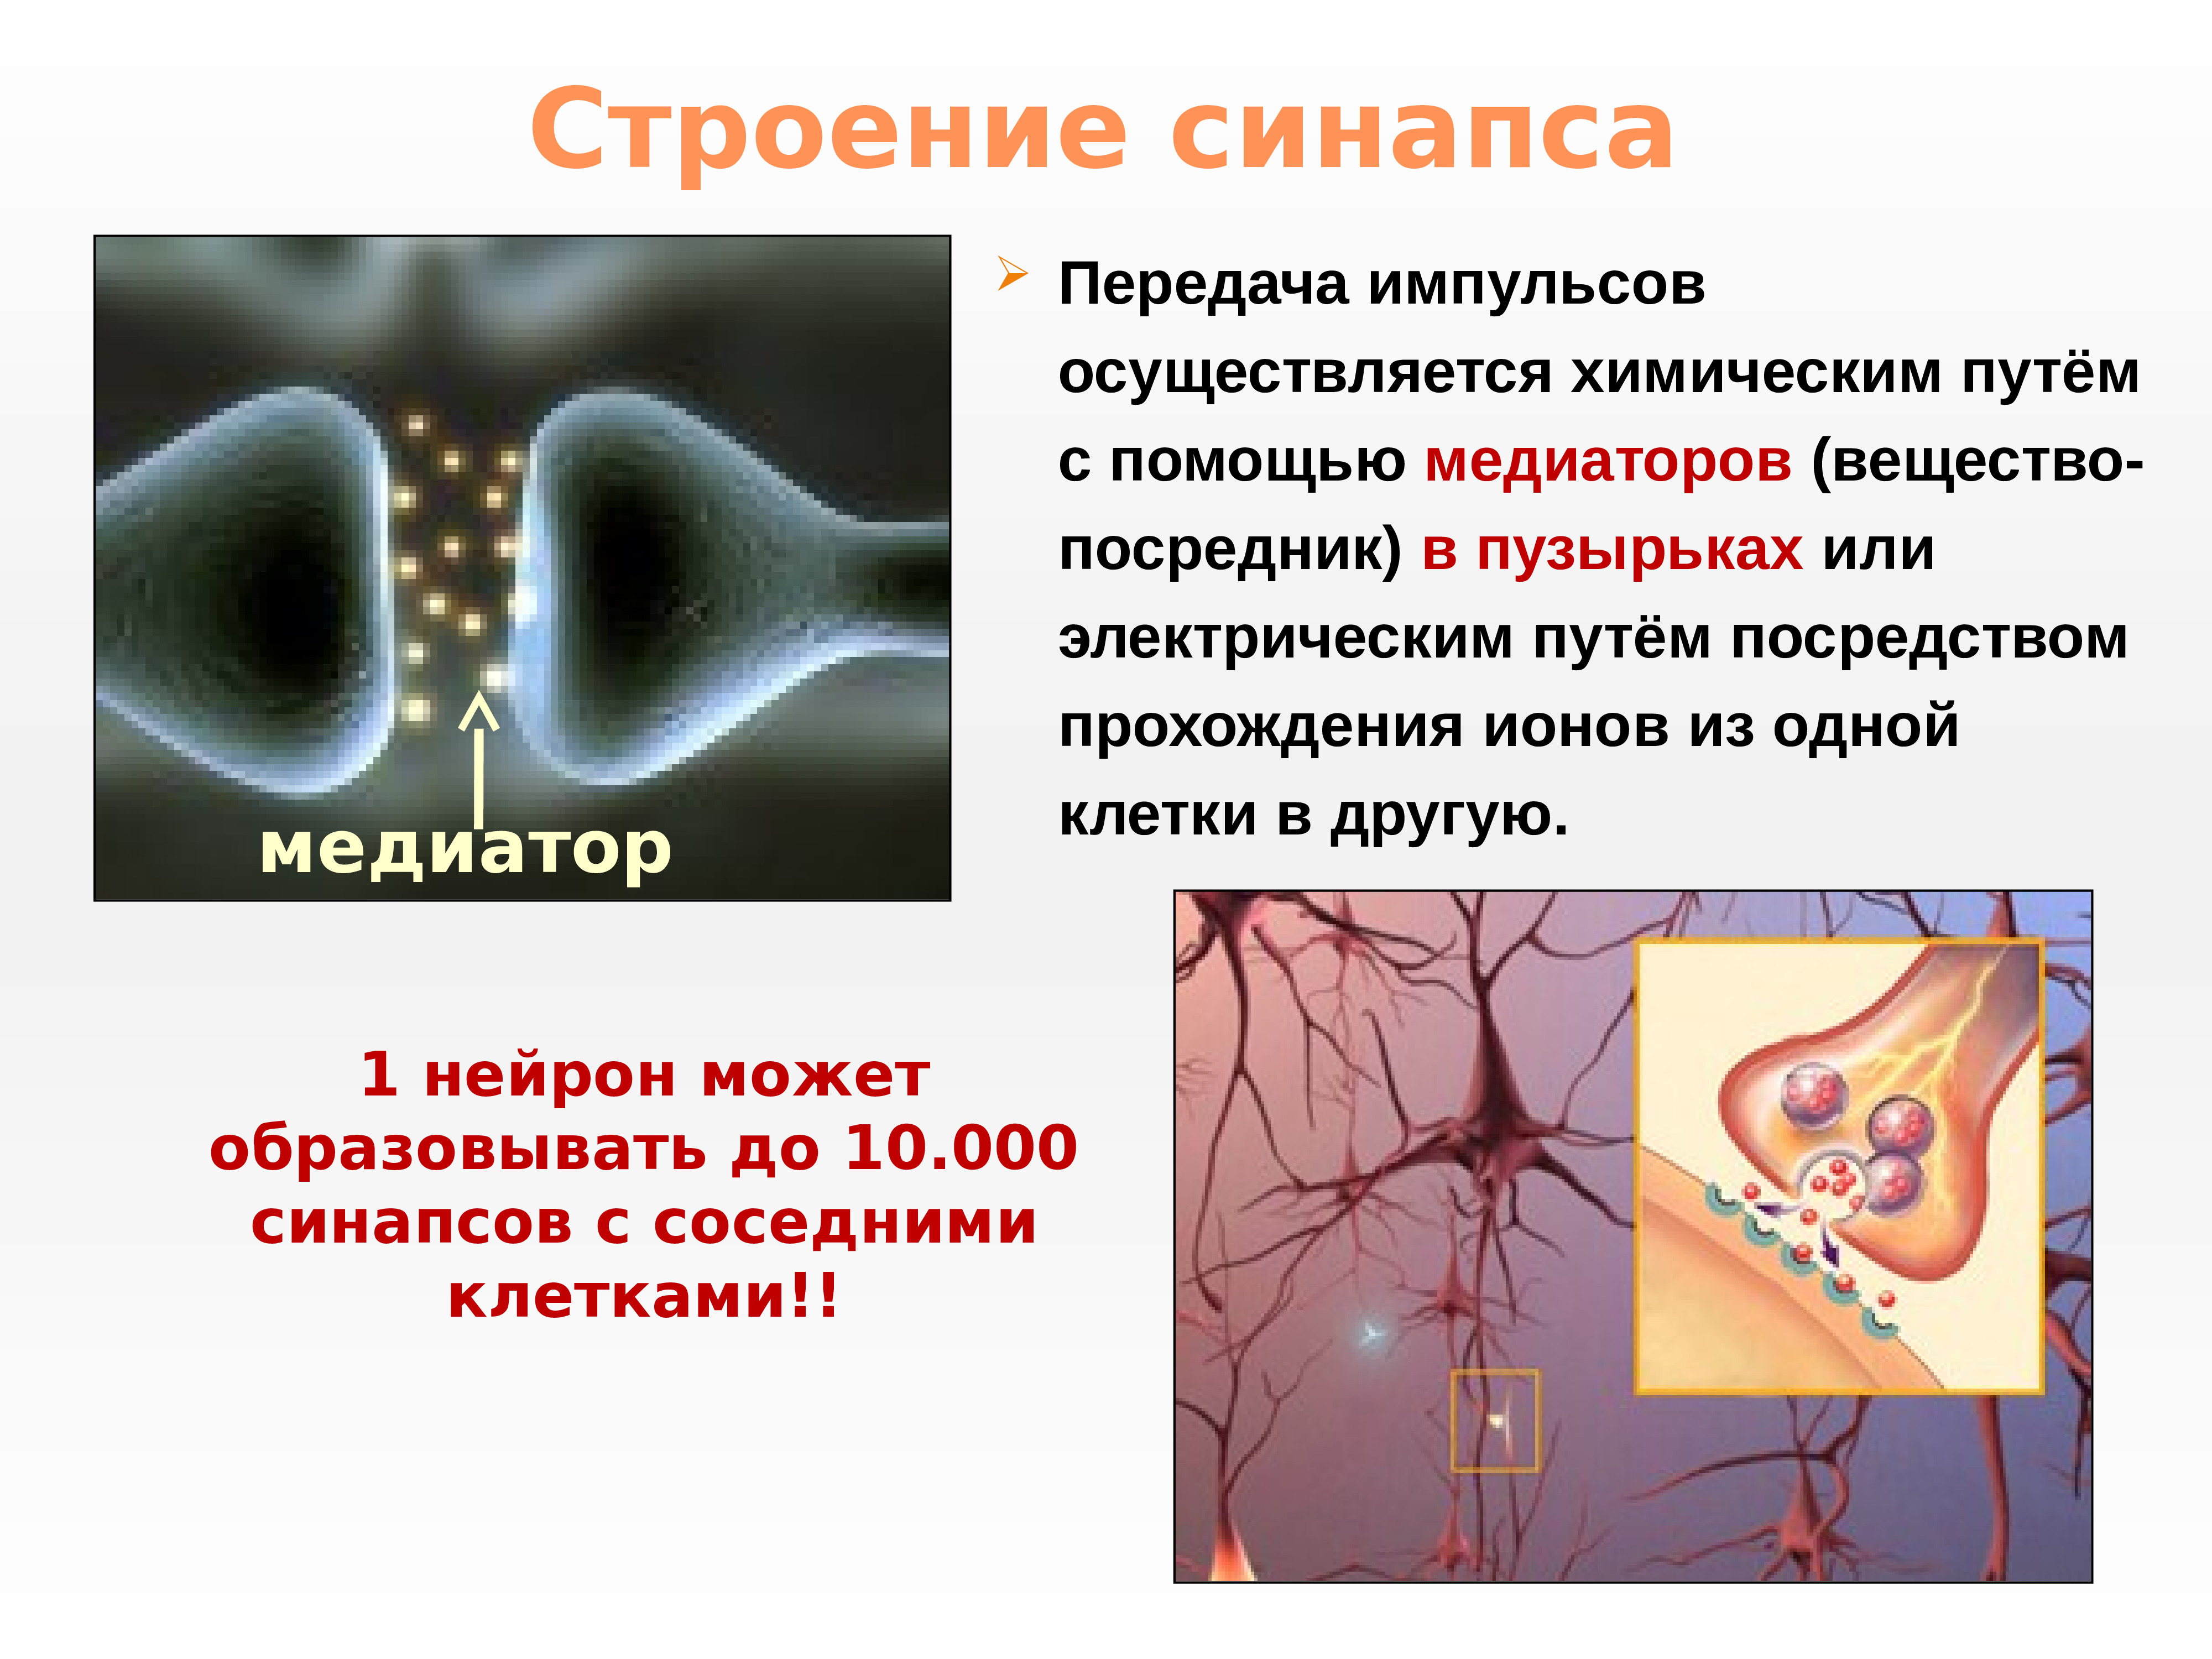 Ткань передающая импульс. Нейромедиаторы в синапсах. Строение синапса. Строение синапса и передача нервного импульса. Строение синапса и нейромедиаторы.